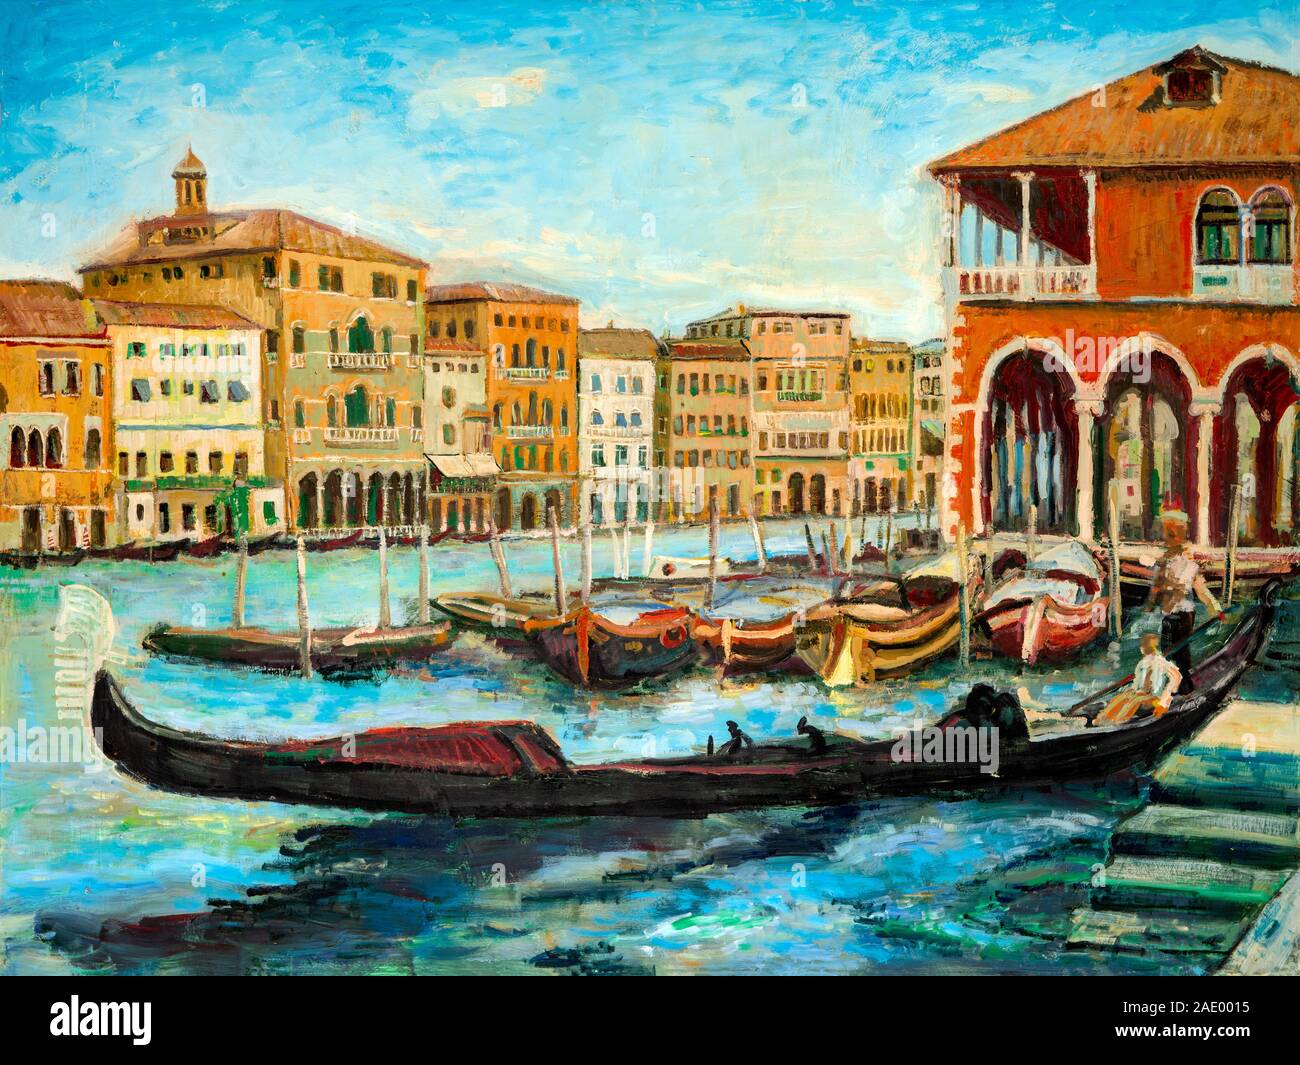 Une peinture à l'huile gondoles vénitiennes, célèbres bateaux attendent les touristes sur le Grand canal à Venise, Italie. Banque D'Images